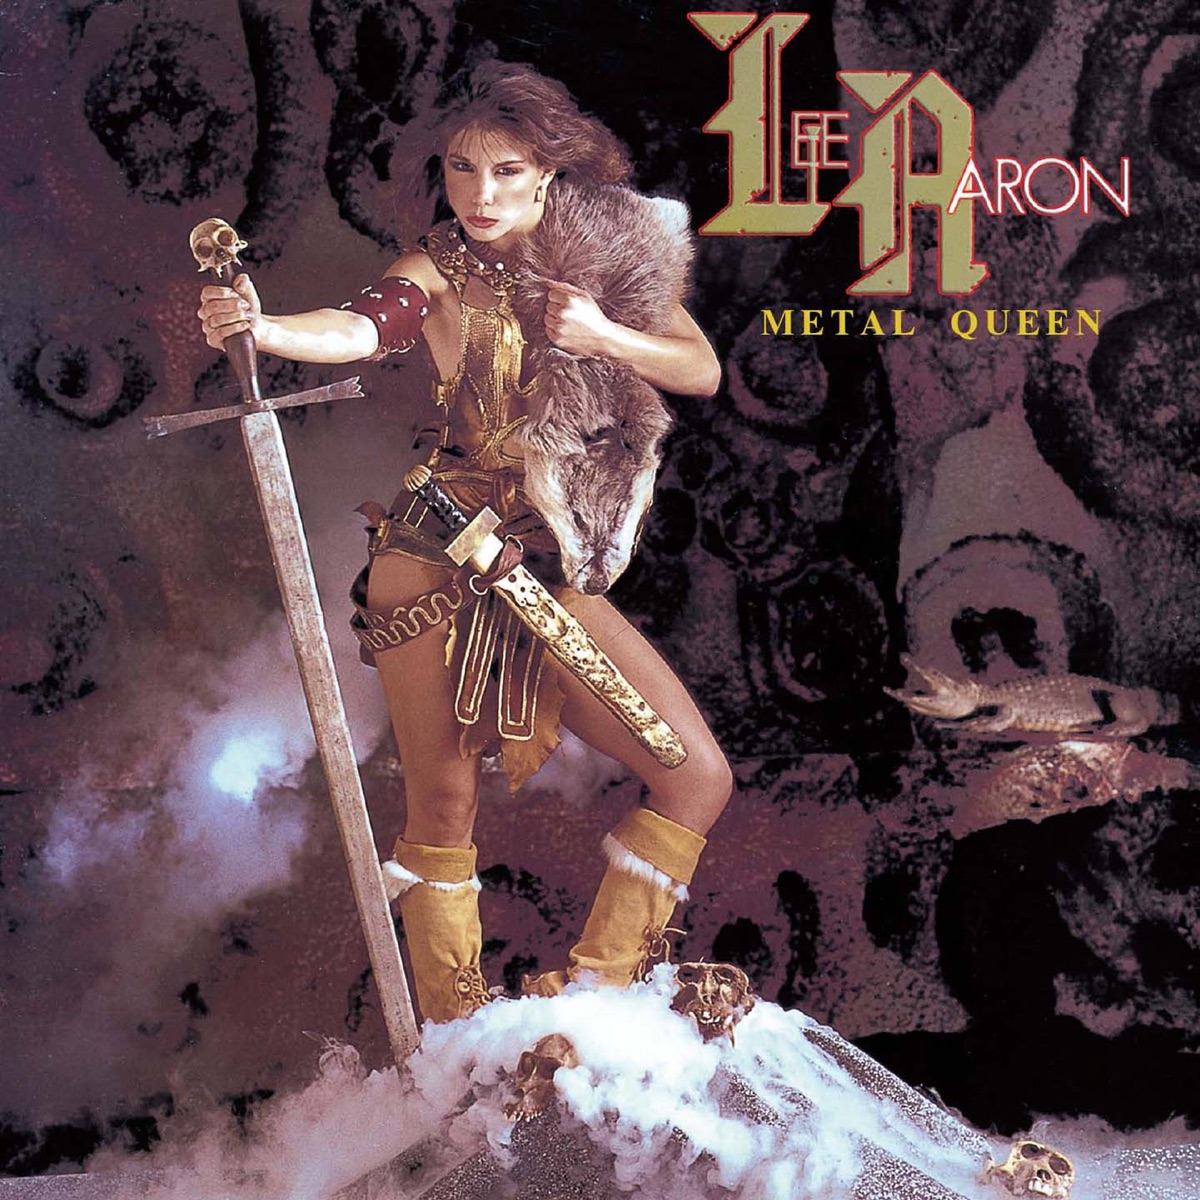 ‎Metal Queen - Album by Lee Aaron - Apple Music